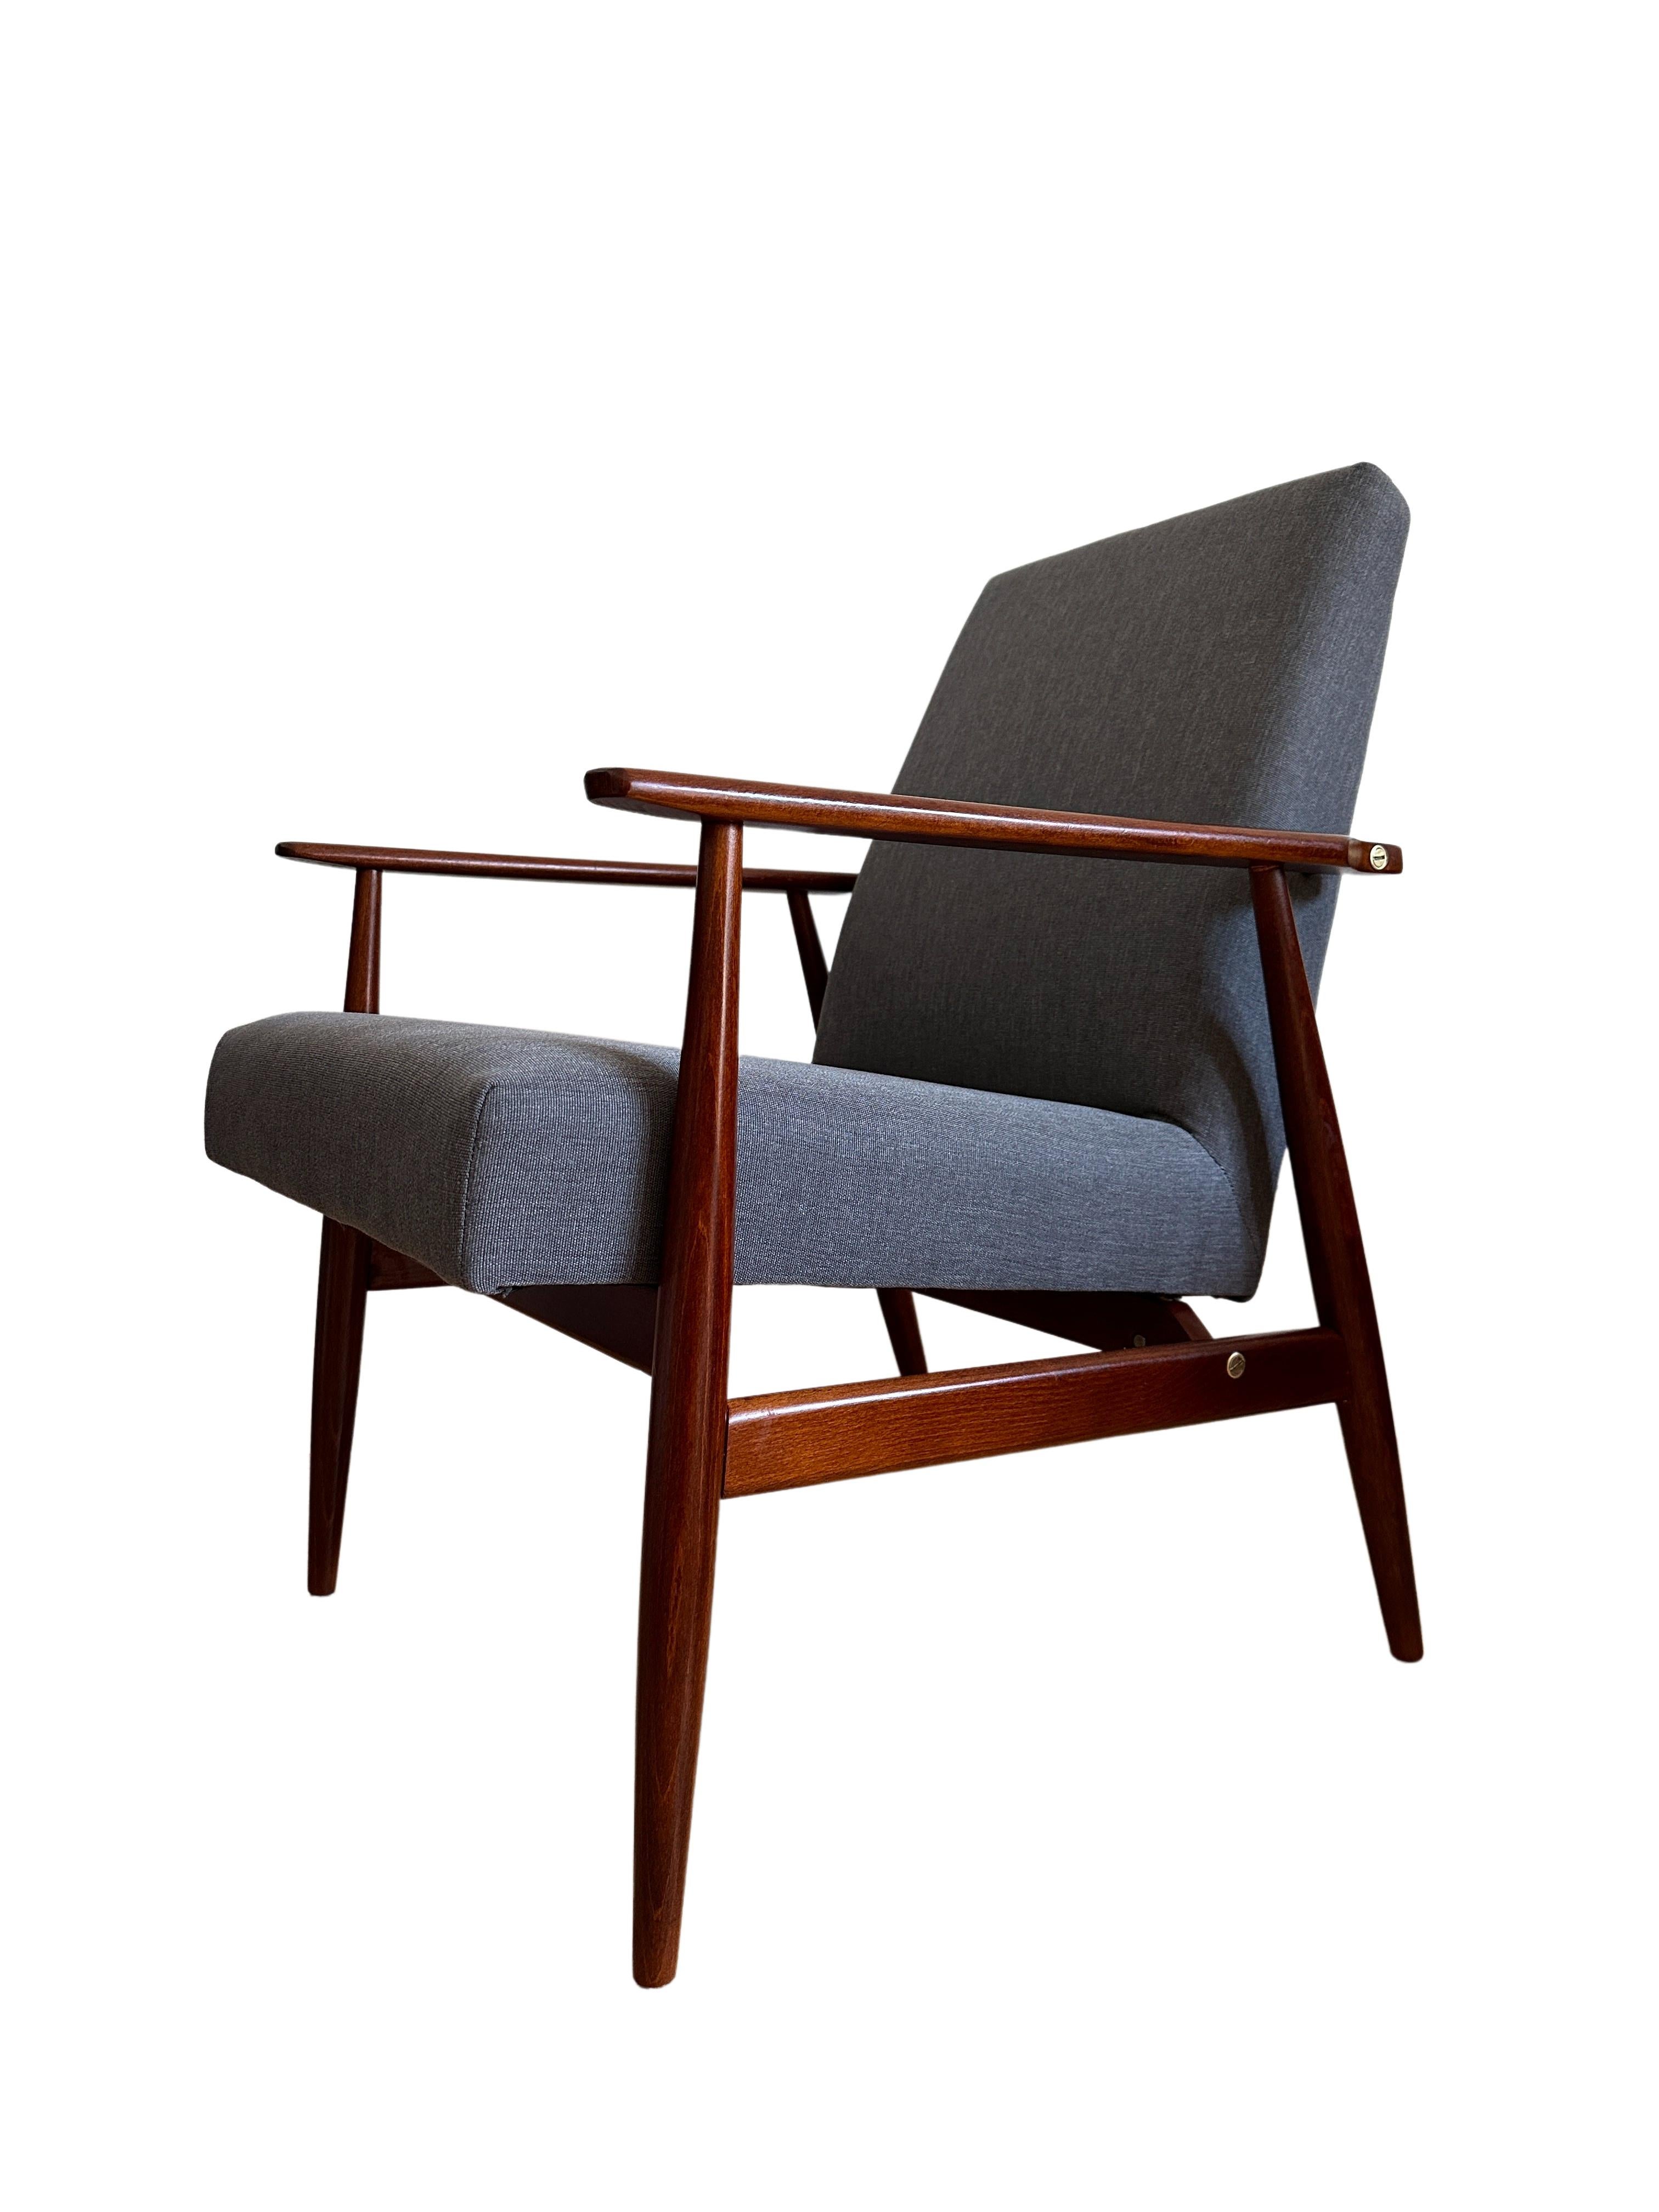 Ensemble de deux fauteuils conçus par Henryk Lis dans les années 1960. 

La structure est en bois de hêtre de couleur chaude, finie avec un vernis satiné semi-mat. La tapisserie d'ameublement est un tissu de haute qualité de la marque danoise